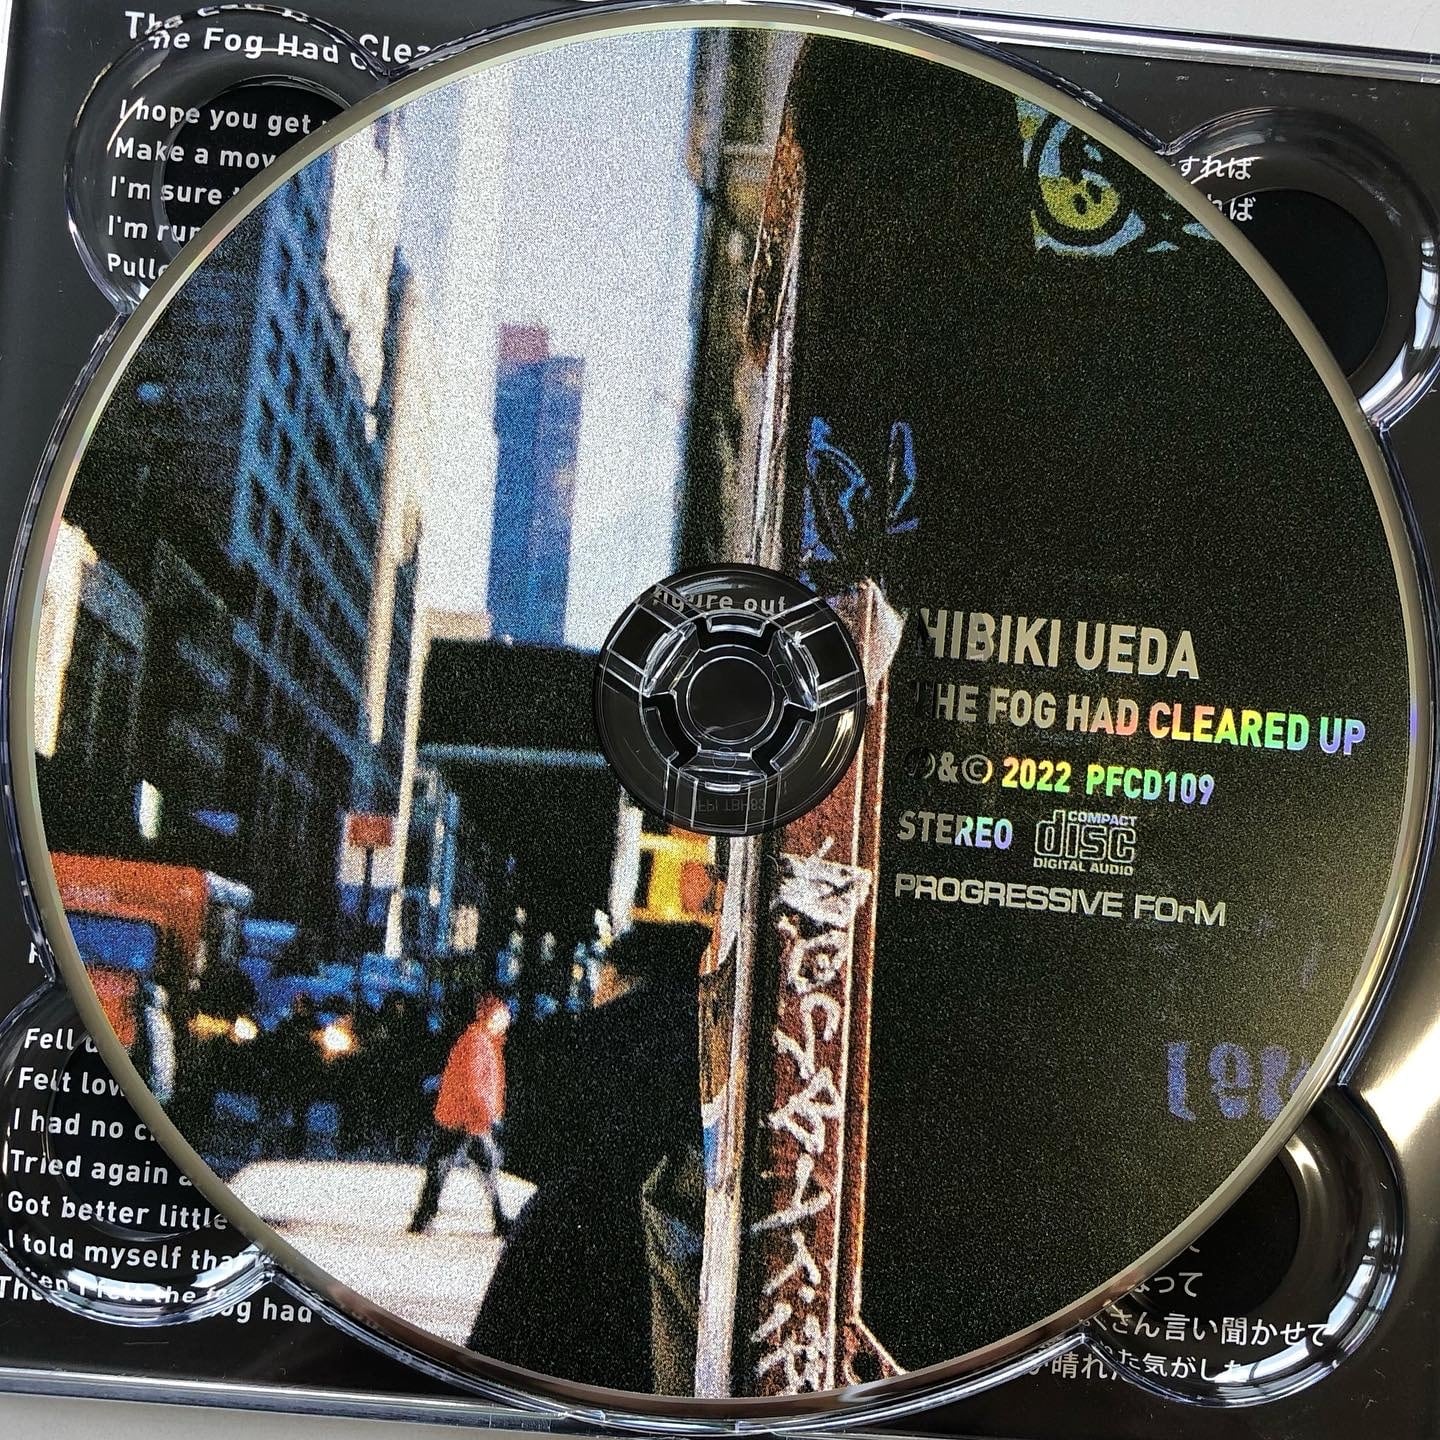 Collection Printemps/Été 2010 (2010, CD) - Discogs